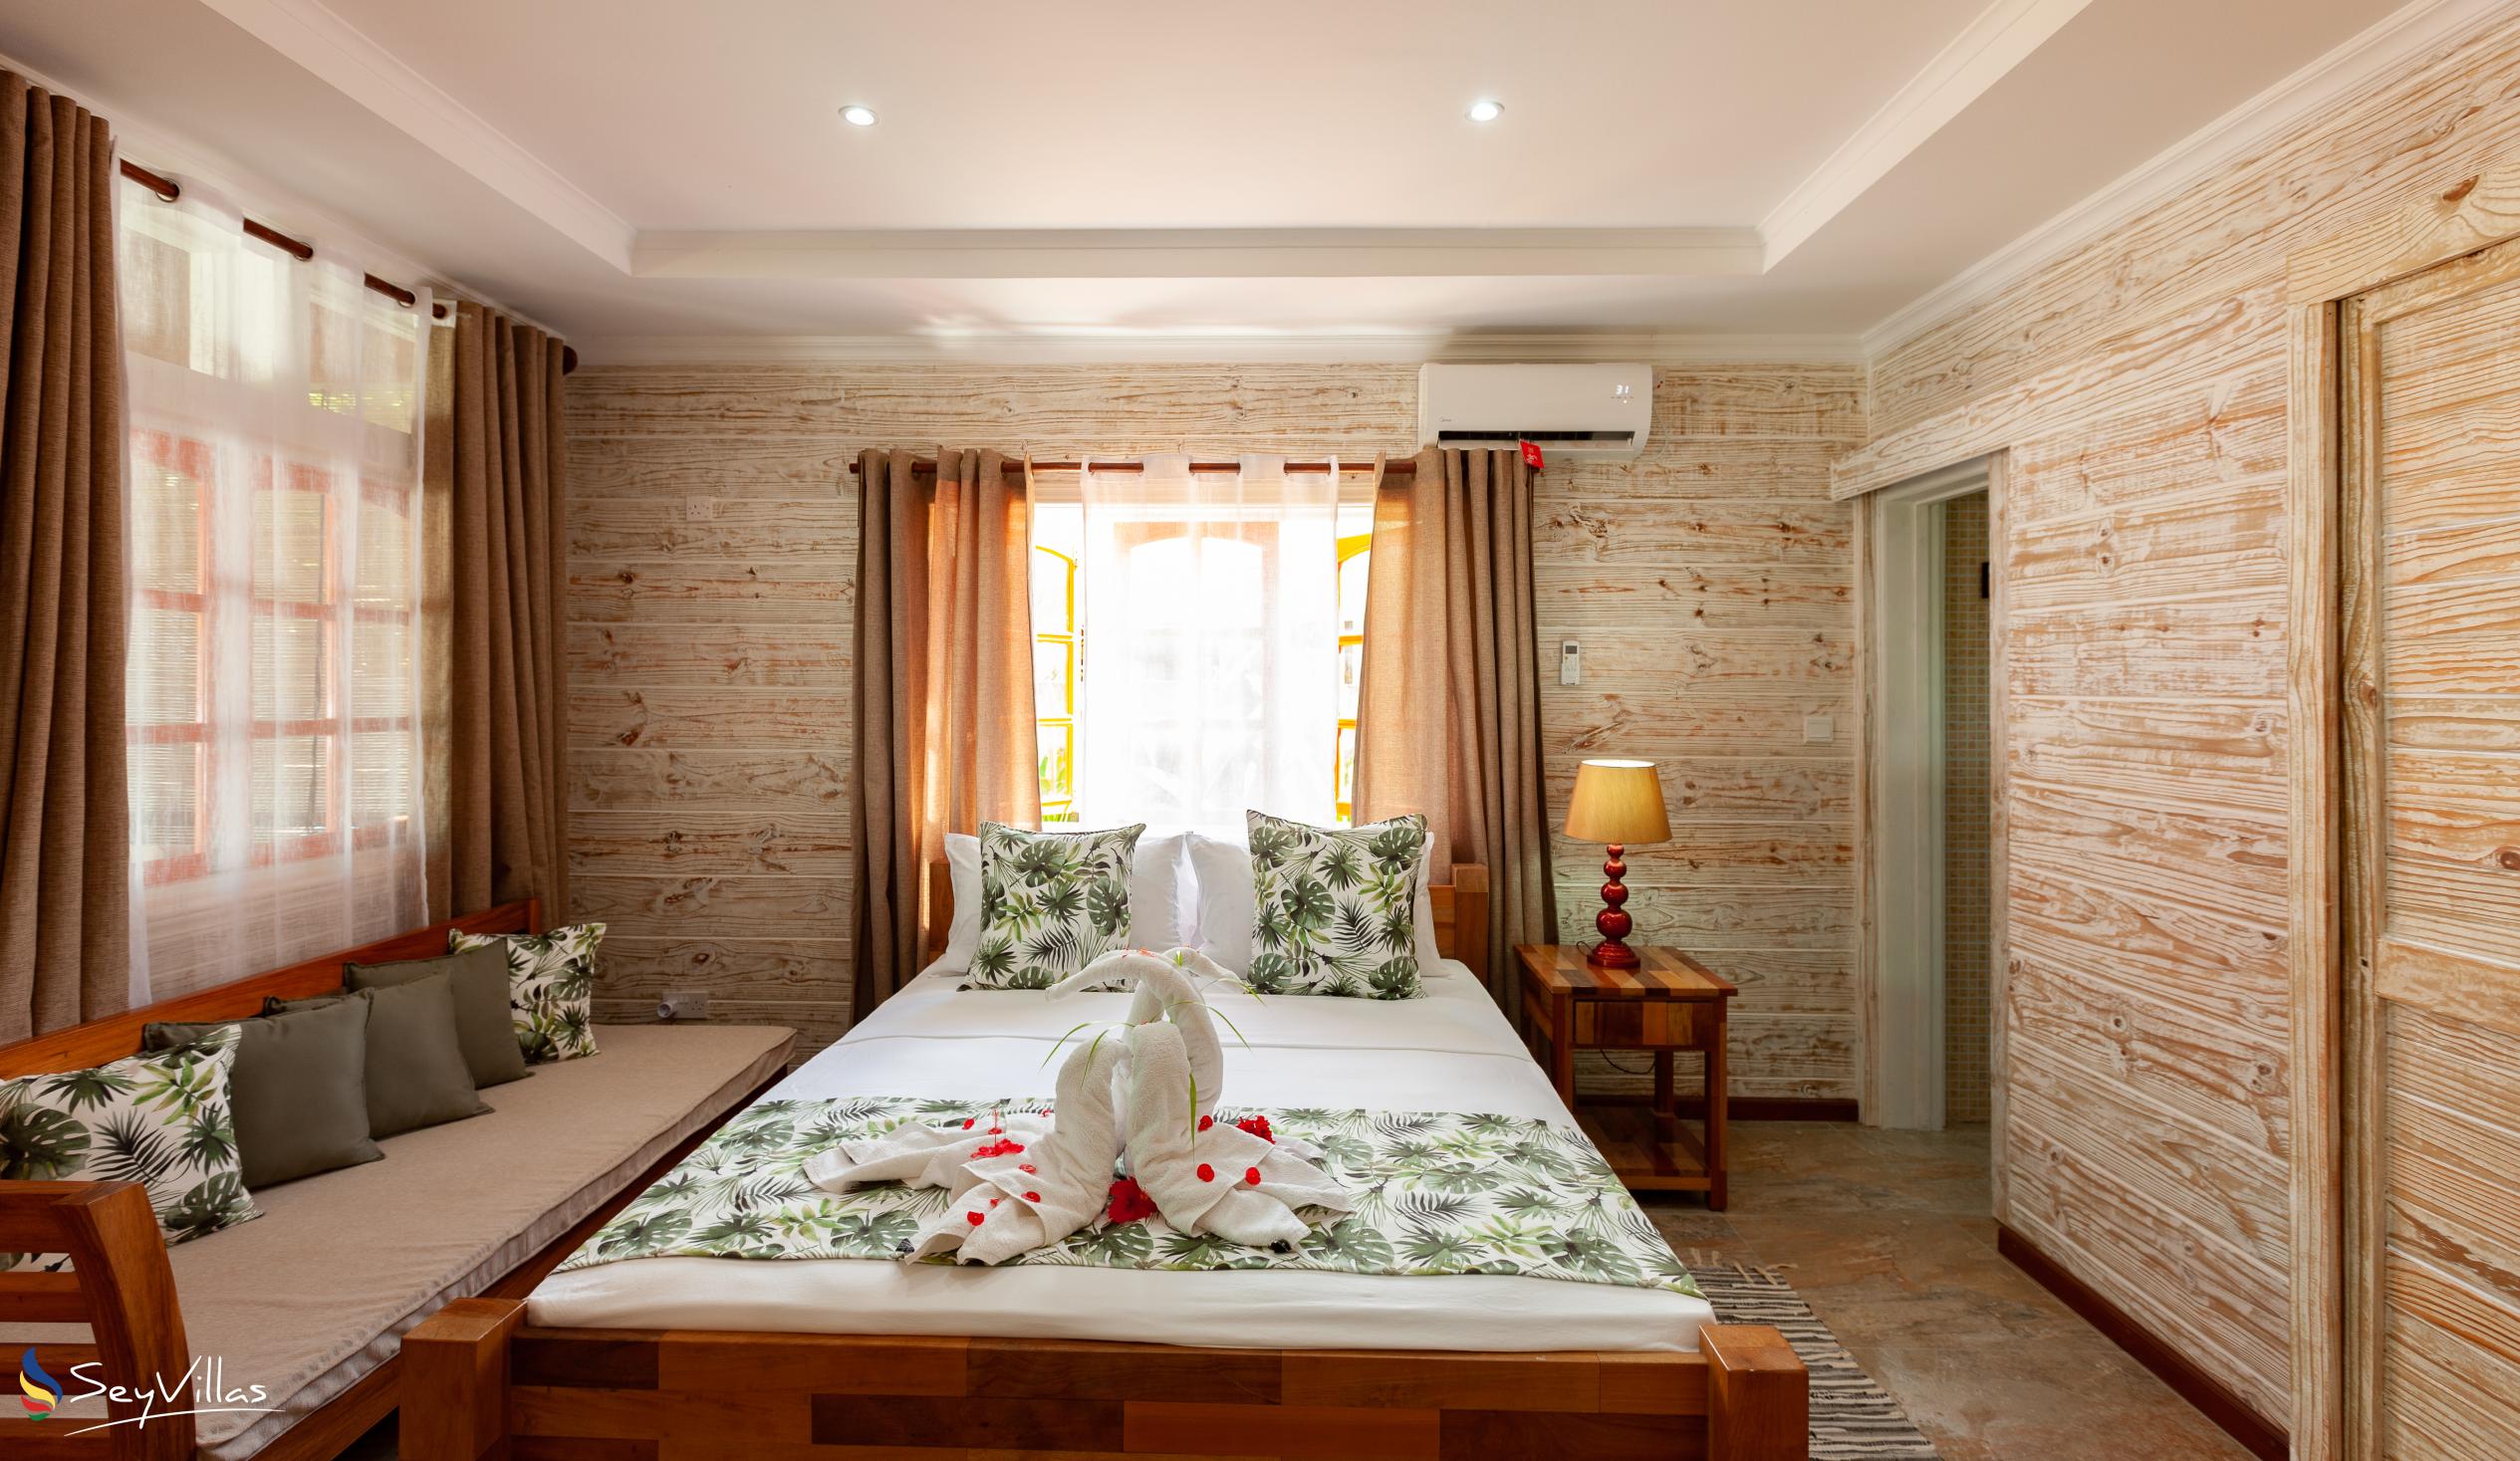 Foto 49: Ambiance Villa - Villa con 3 camere da letto - La Digue (Seychelles)